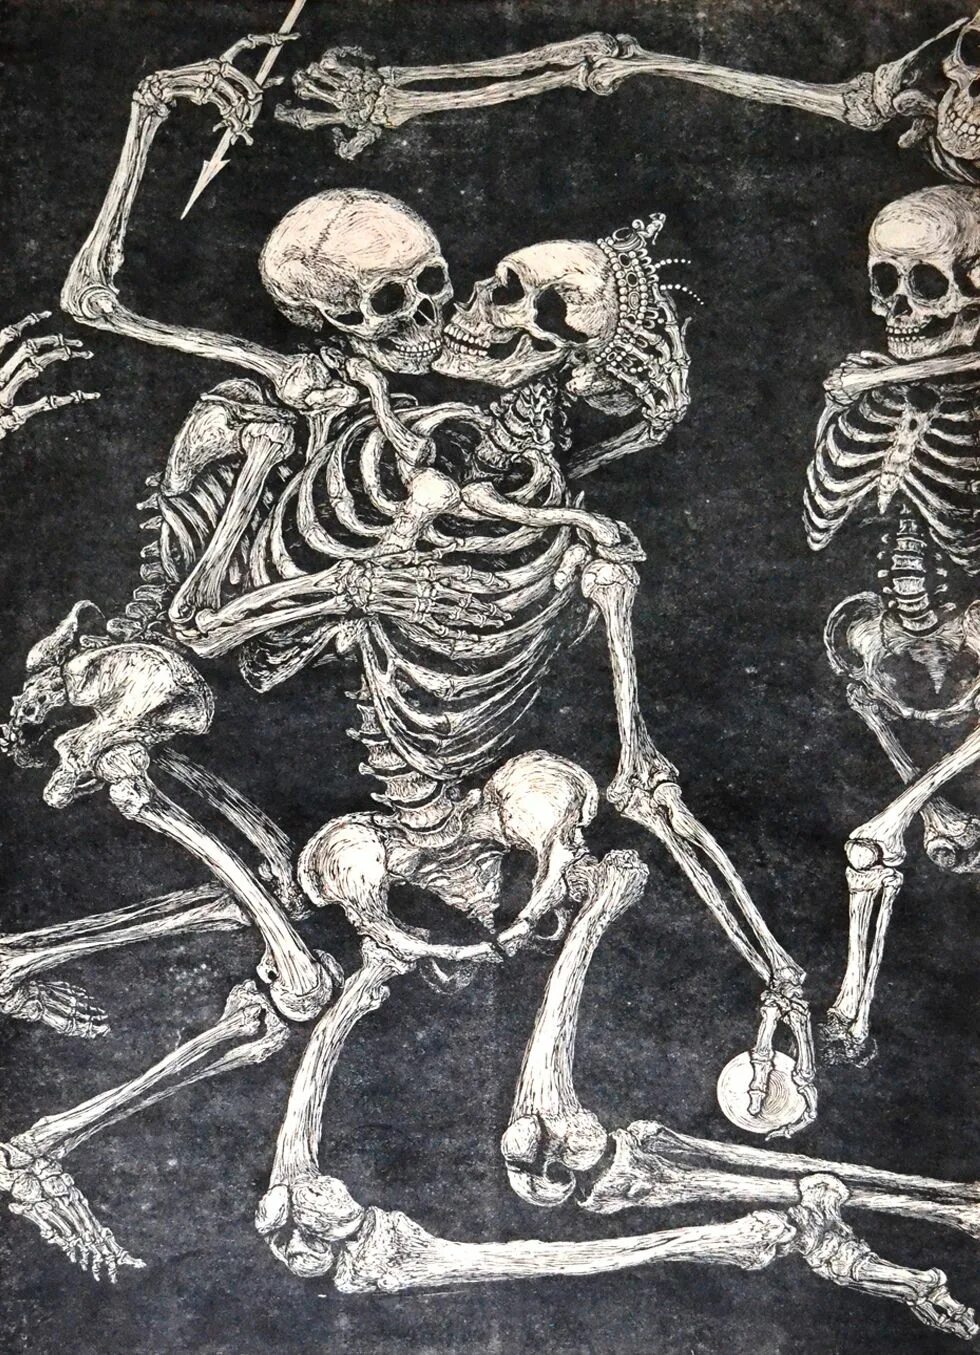 Bone art